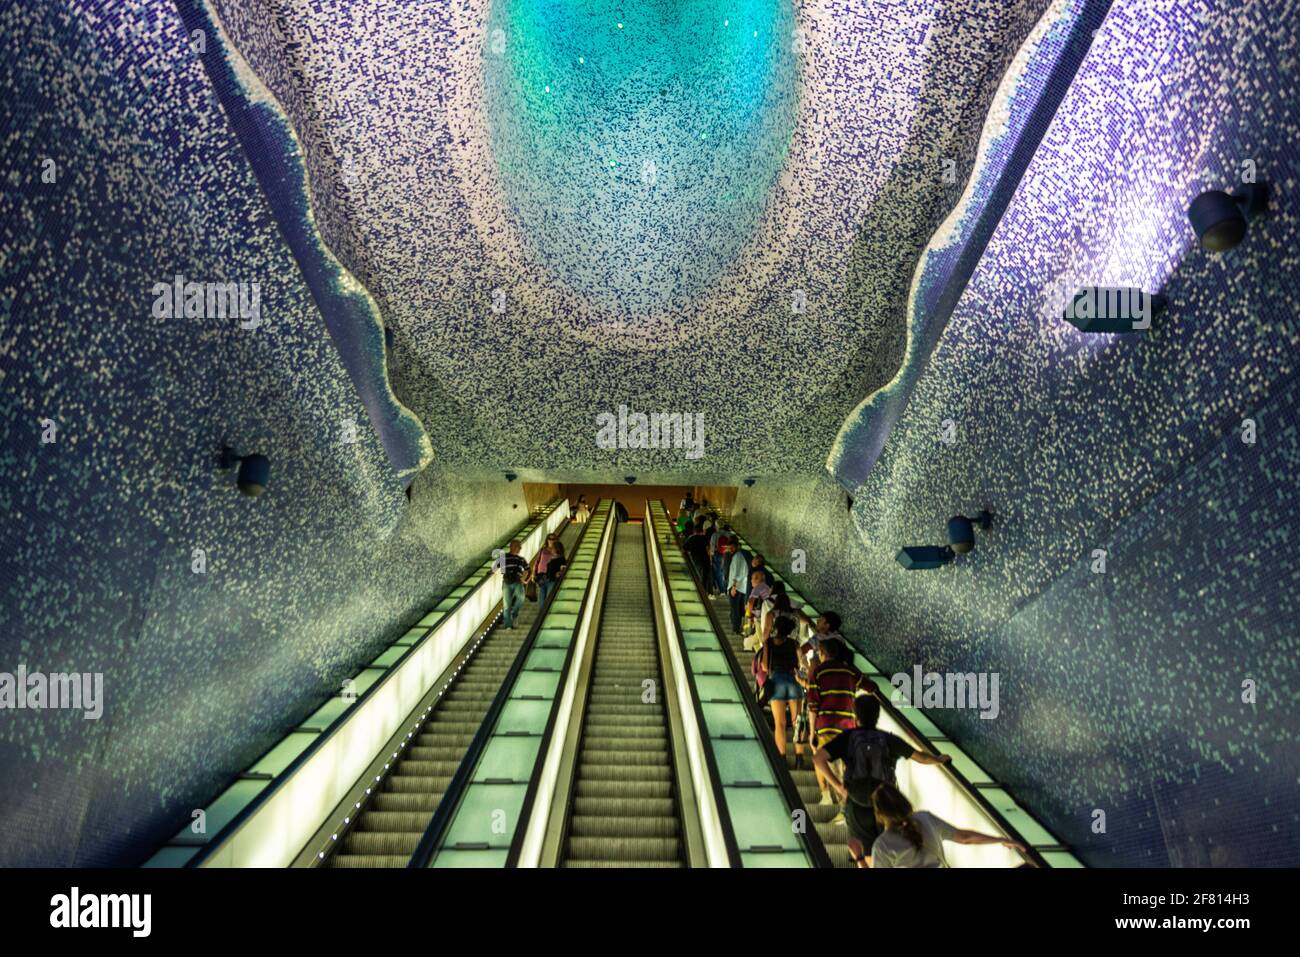 Napoli, Italia - 10 settembre 2019: Toledo, famosa stazione della metropolitana per le sue opere d'arte con persone in giro per Napoli, Italia Foto Stock